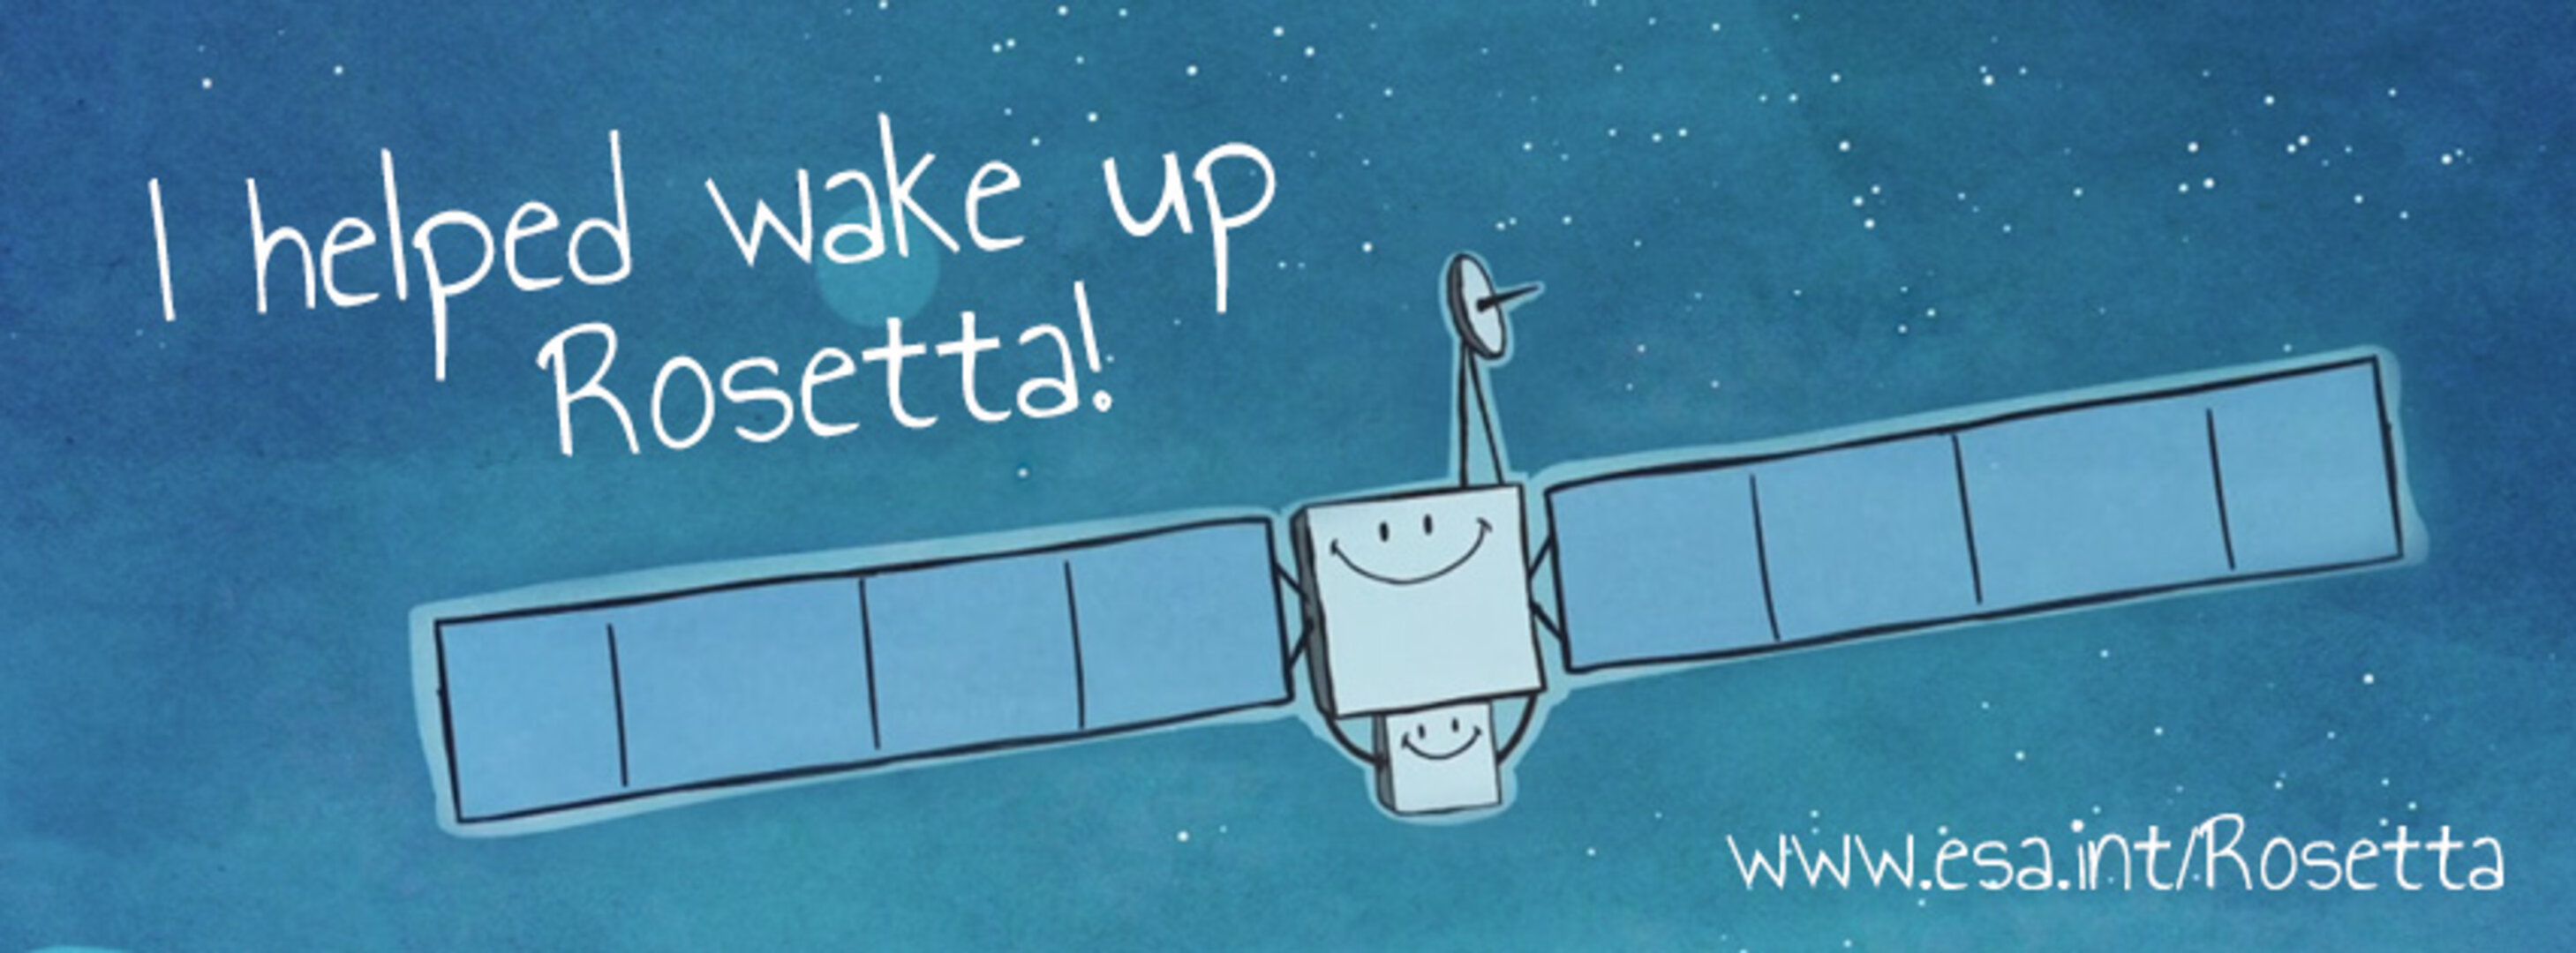 I helped wake up Rosetta!